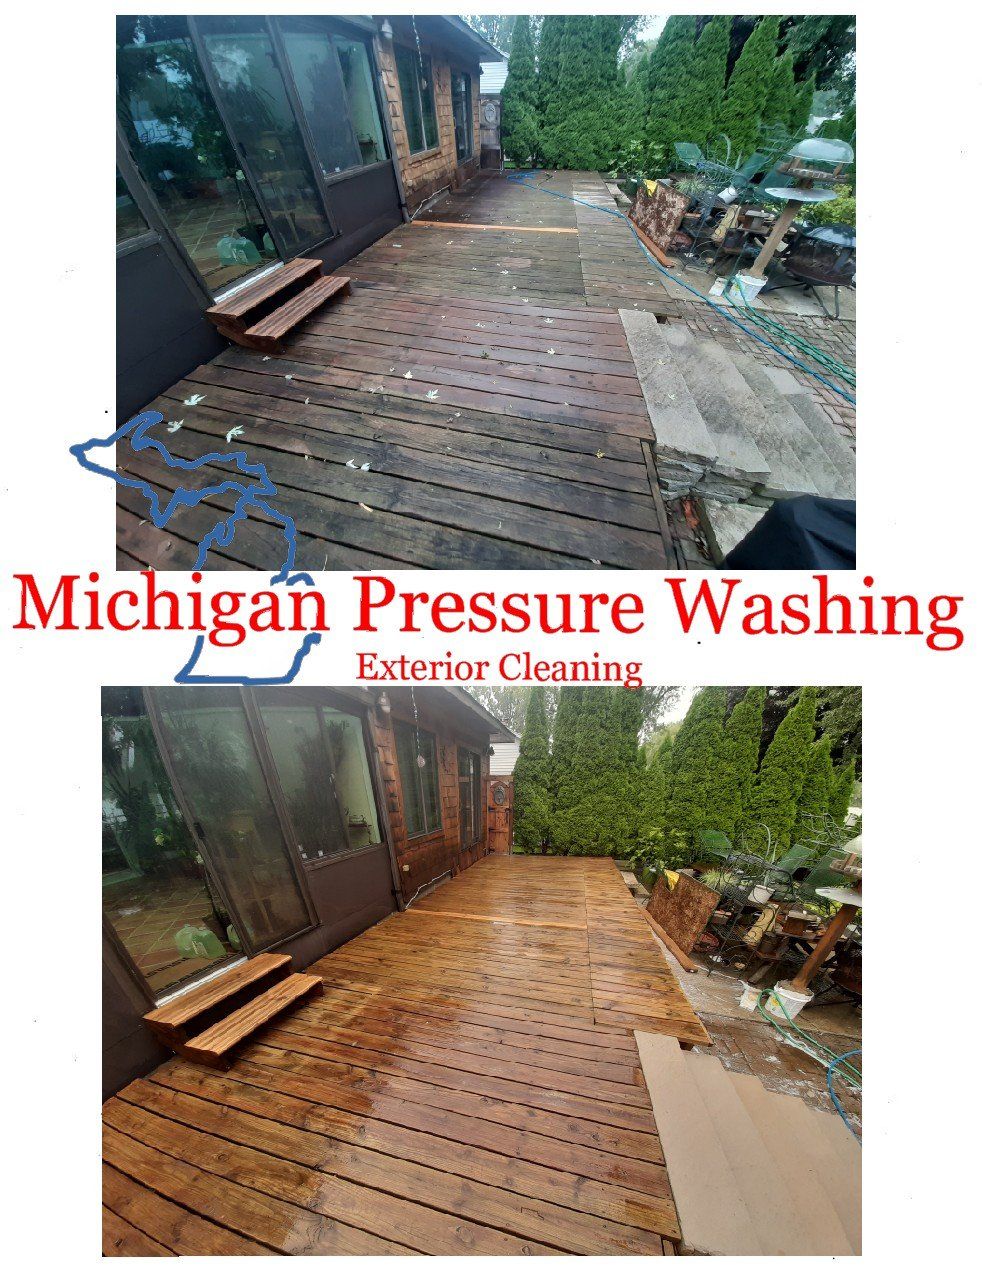 Wood deck washing Michigan Pressure Washing